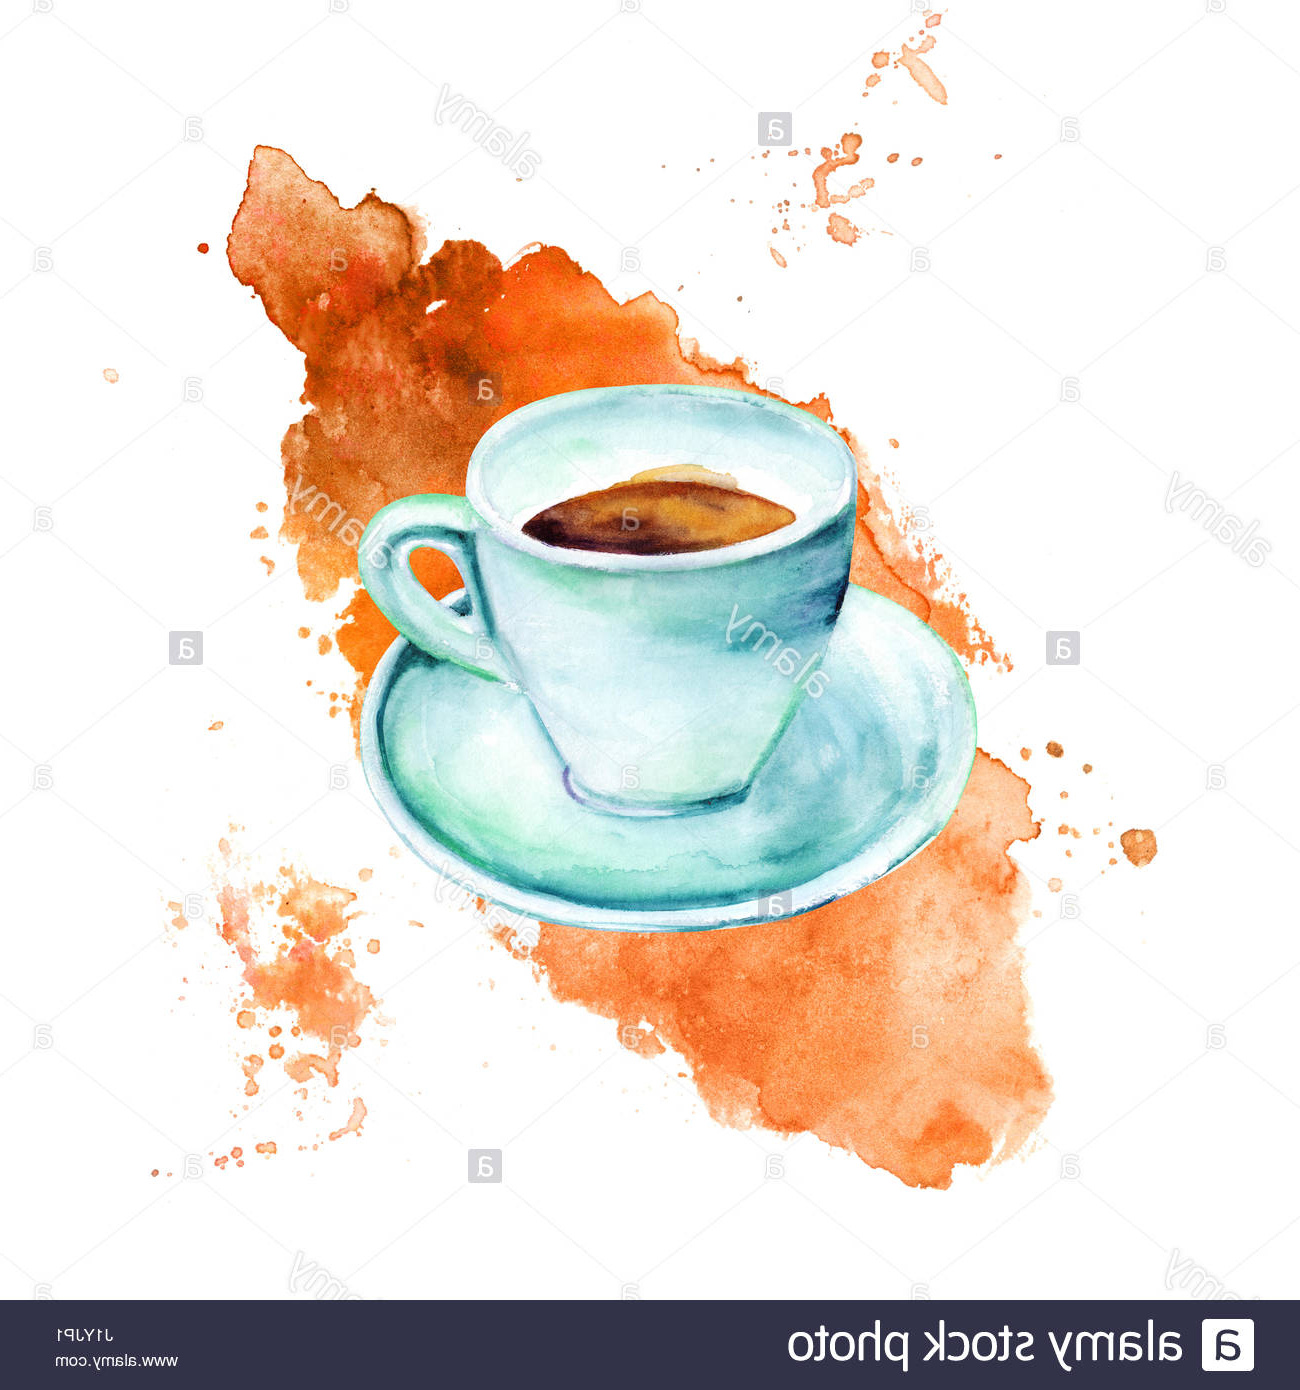 photo image une aquarelle dessin dune tasse de cafe dans la region de teal hues sur une tache de cafe avec une place pour le texte